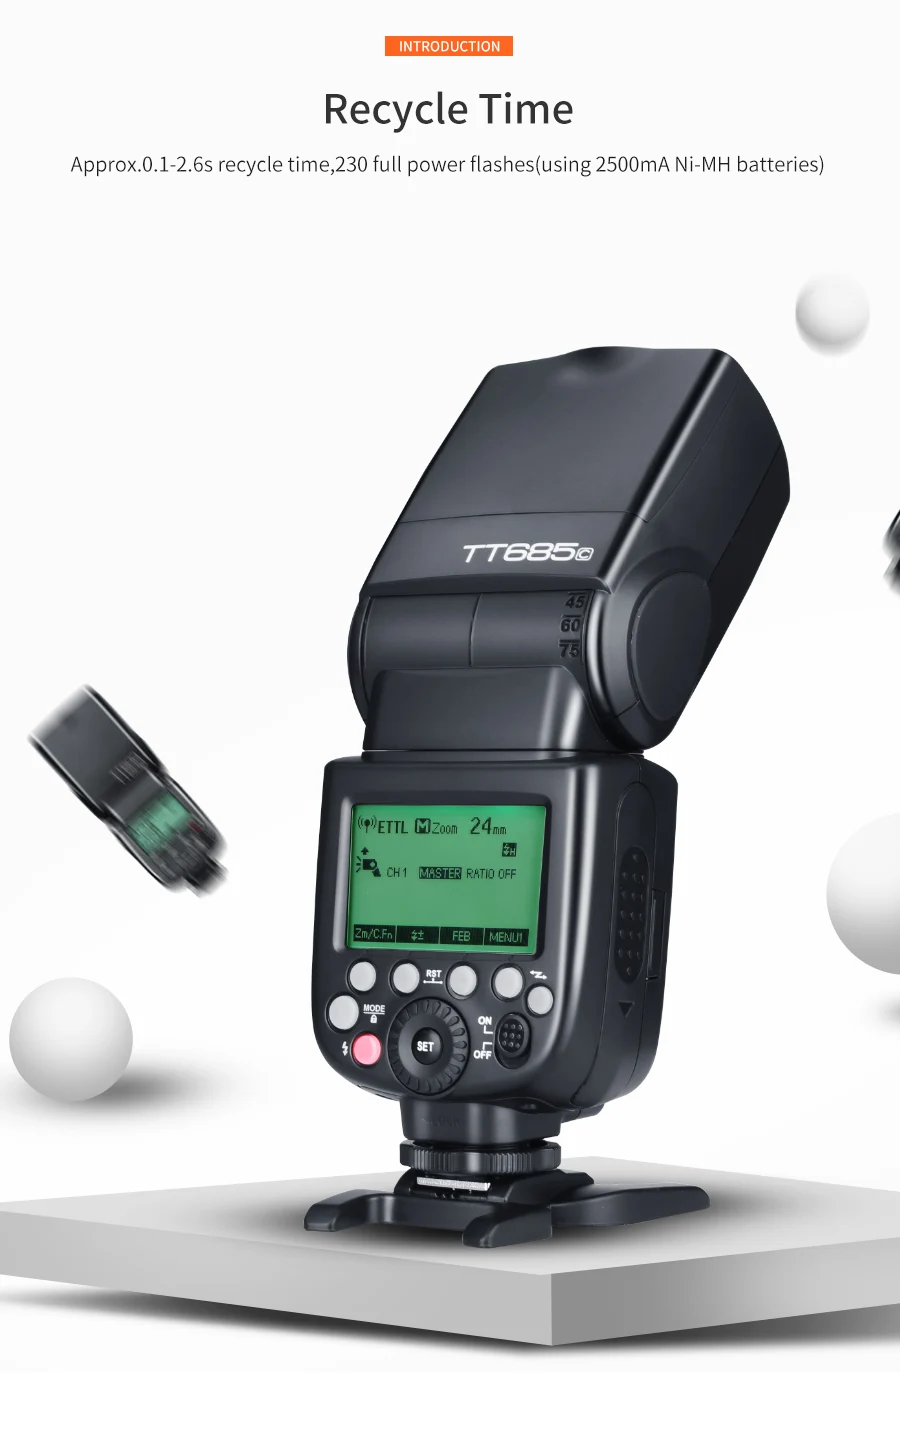 Вспышка для камеры GODOX Thinklite ttl TT685C 2,4 GHz высокоскоростная 1/8000s GN60 для Canon EOS camera s E-ttl II Autoflash(TT685C